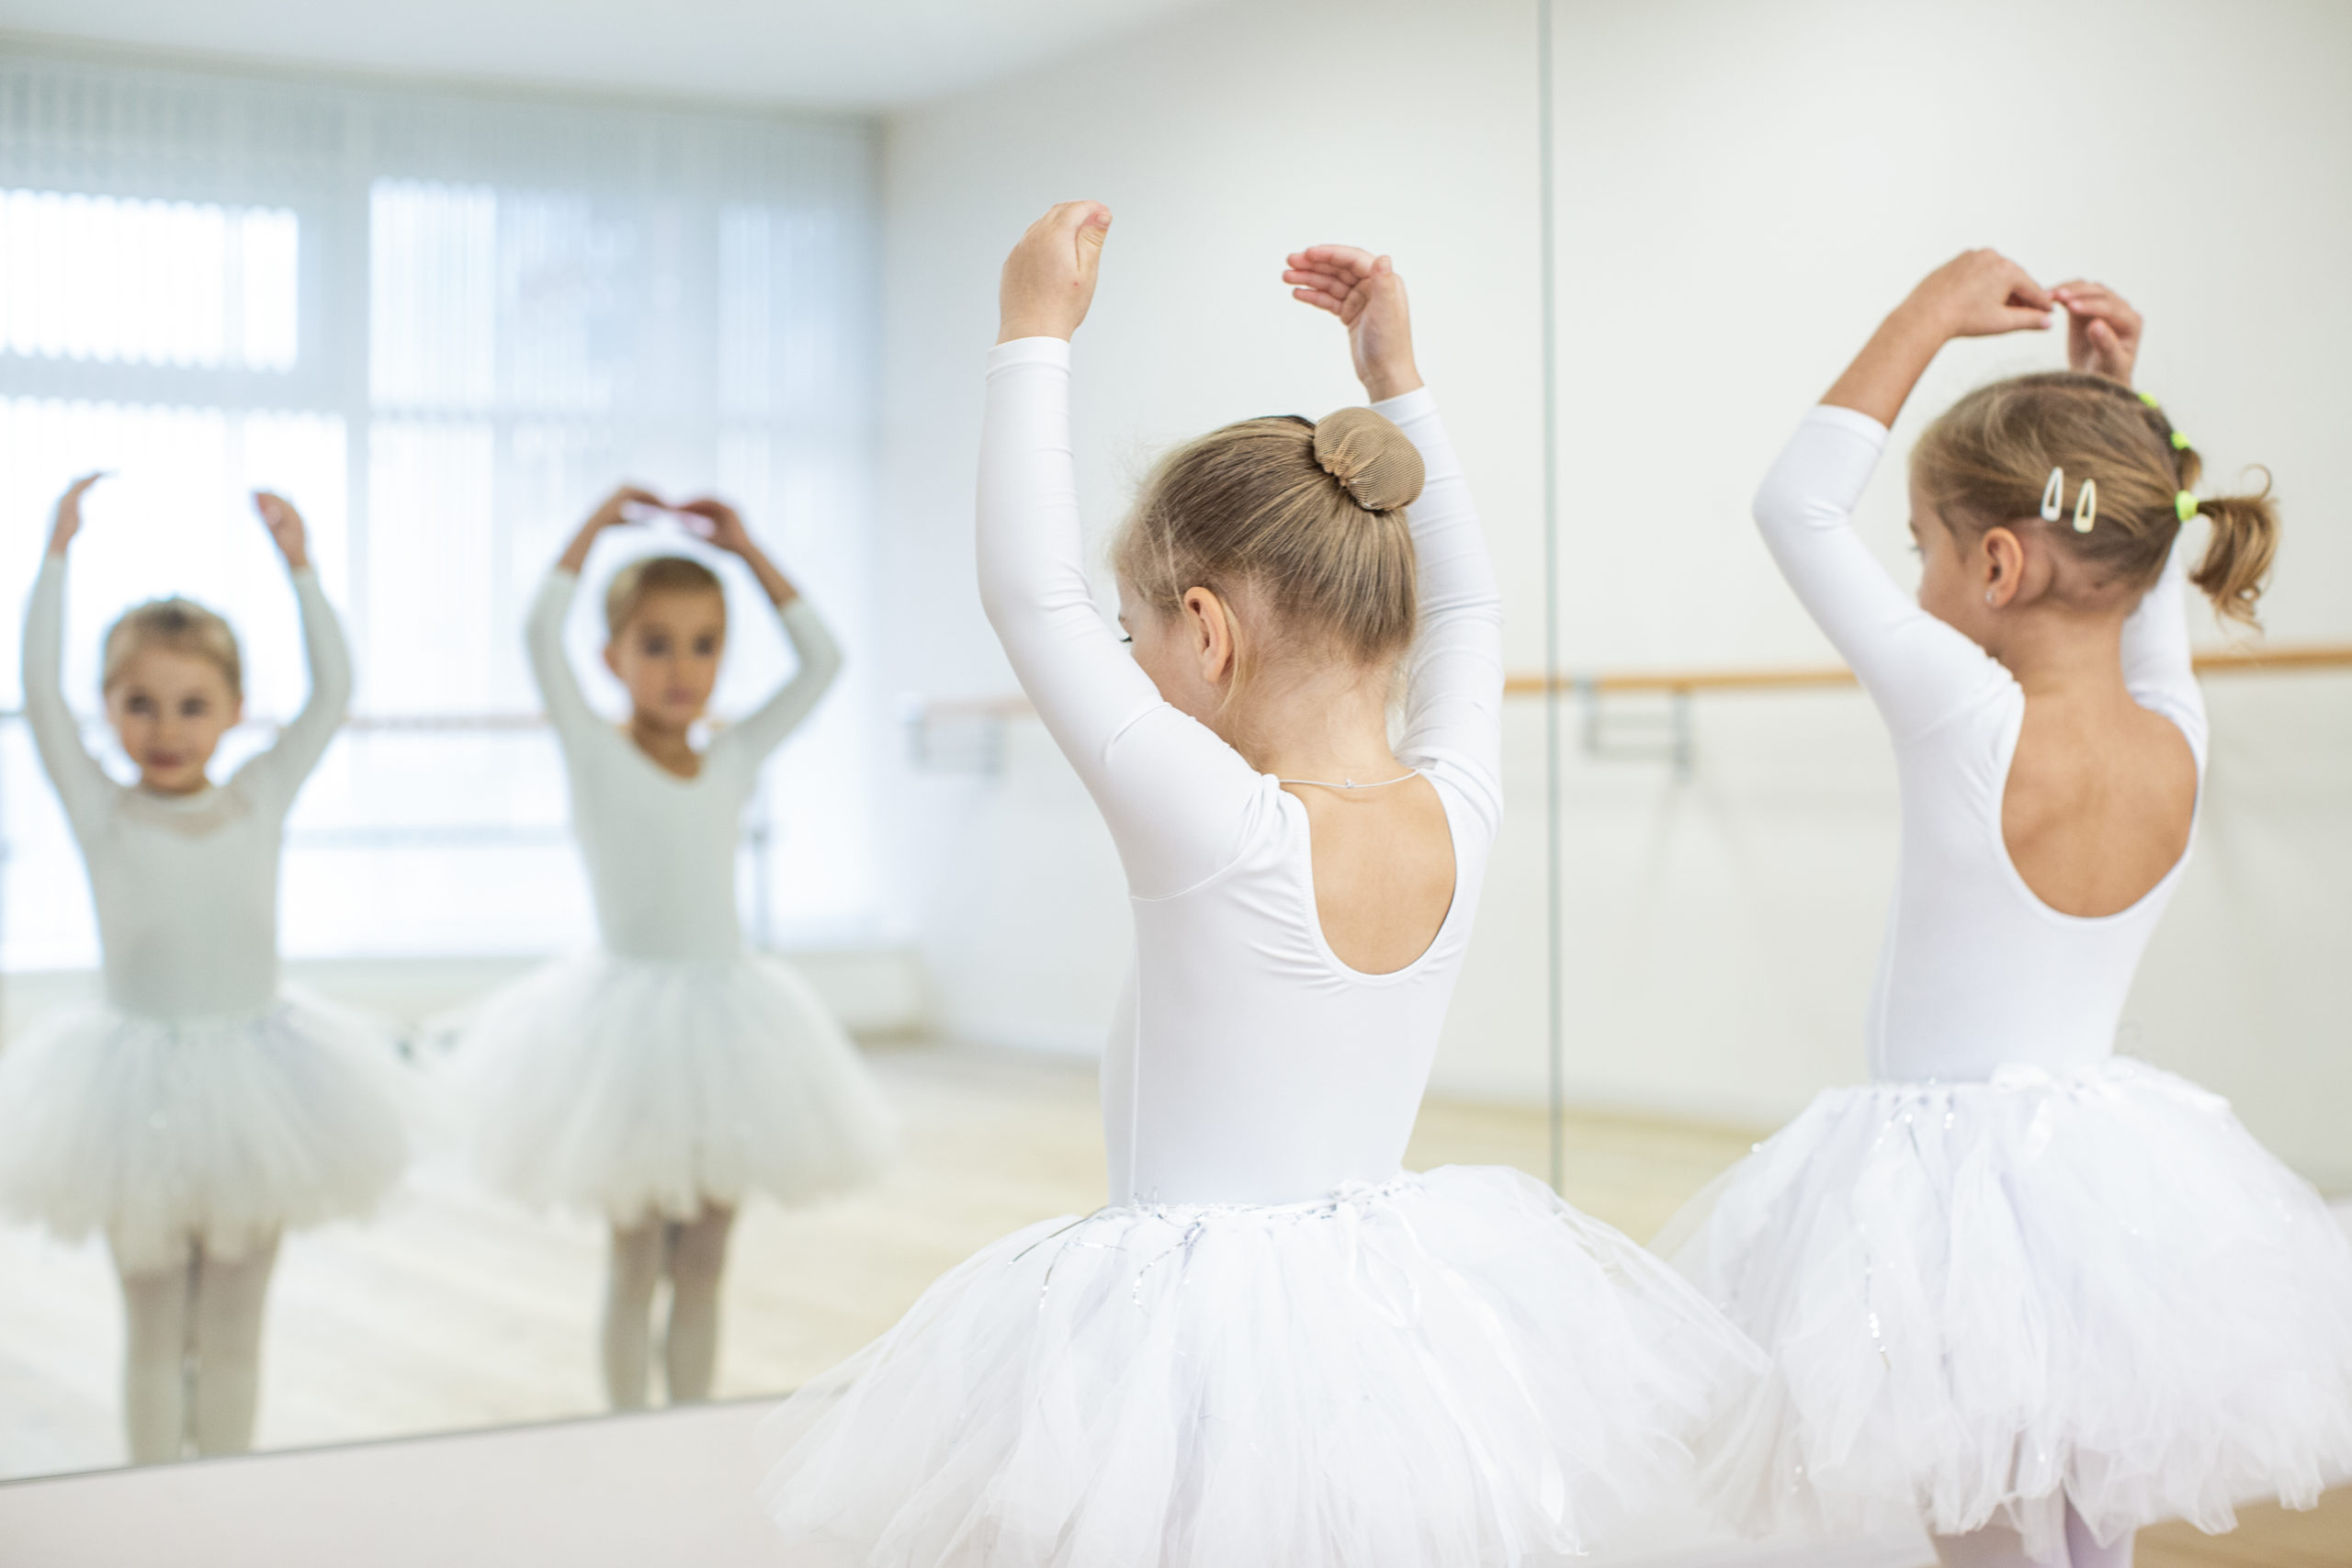 Хореография для детей в Москве - занятия в школе балета Гармония.